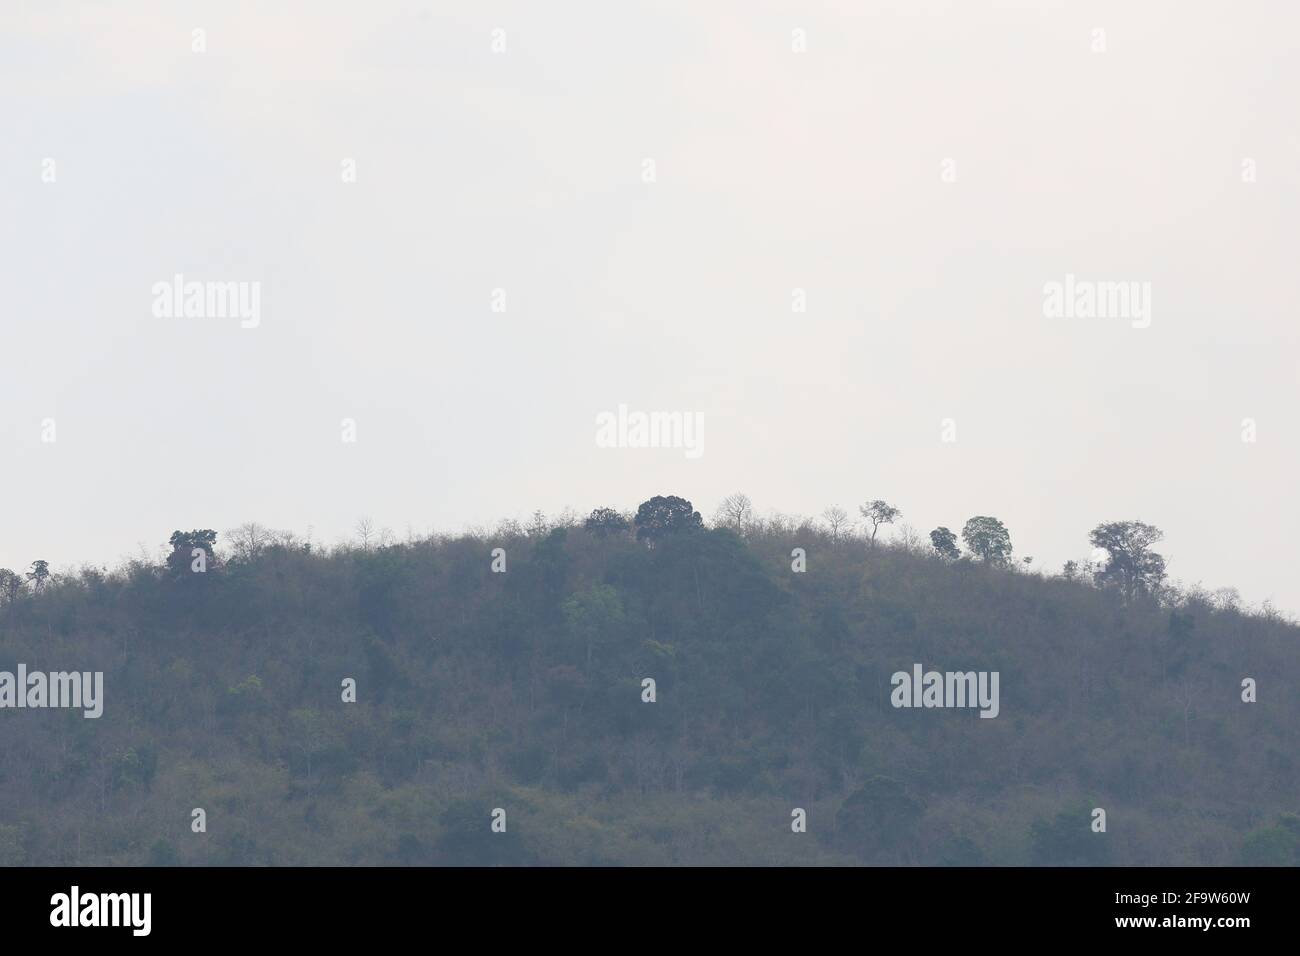 Berg mit Bäumen auf grauem Himmel Hintergrund für Design in Ihrer Arbeit Natur Konzept. Stockfoto